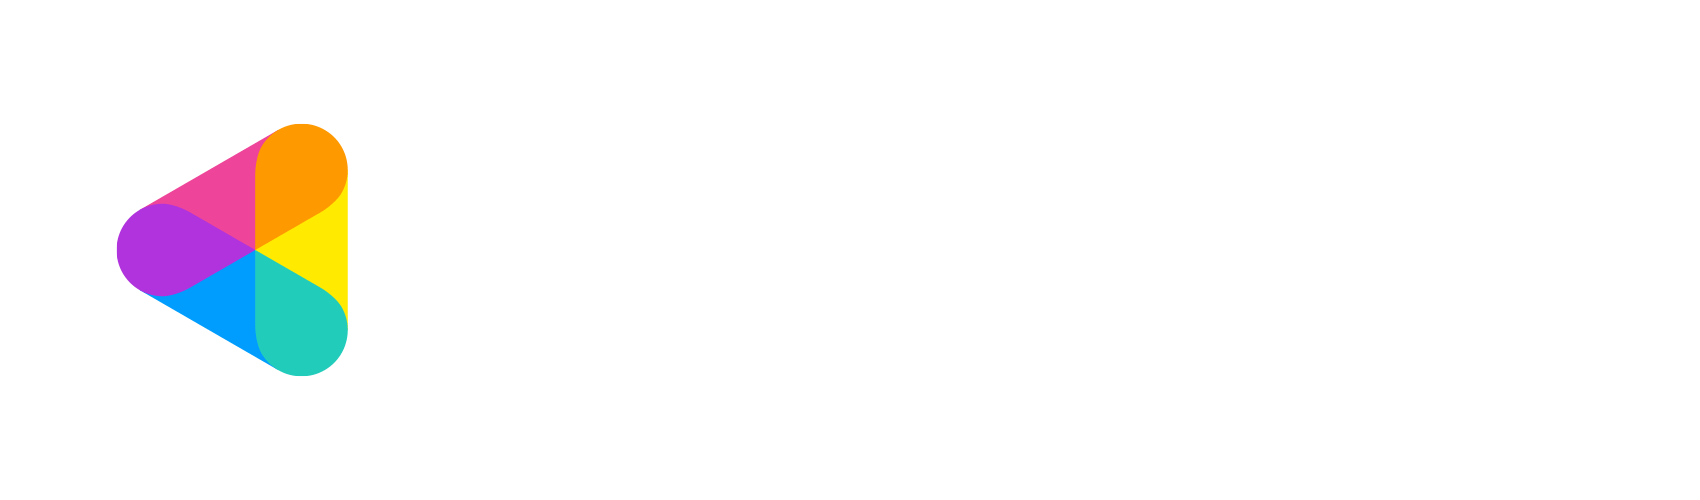 株式会社ココナラ のロゴ